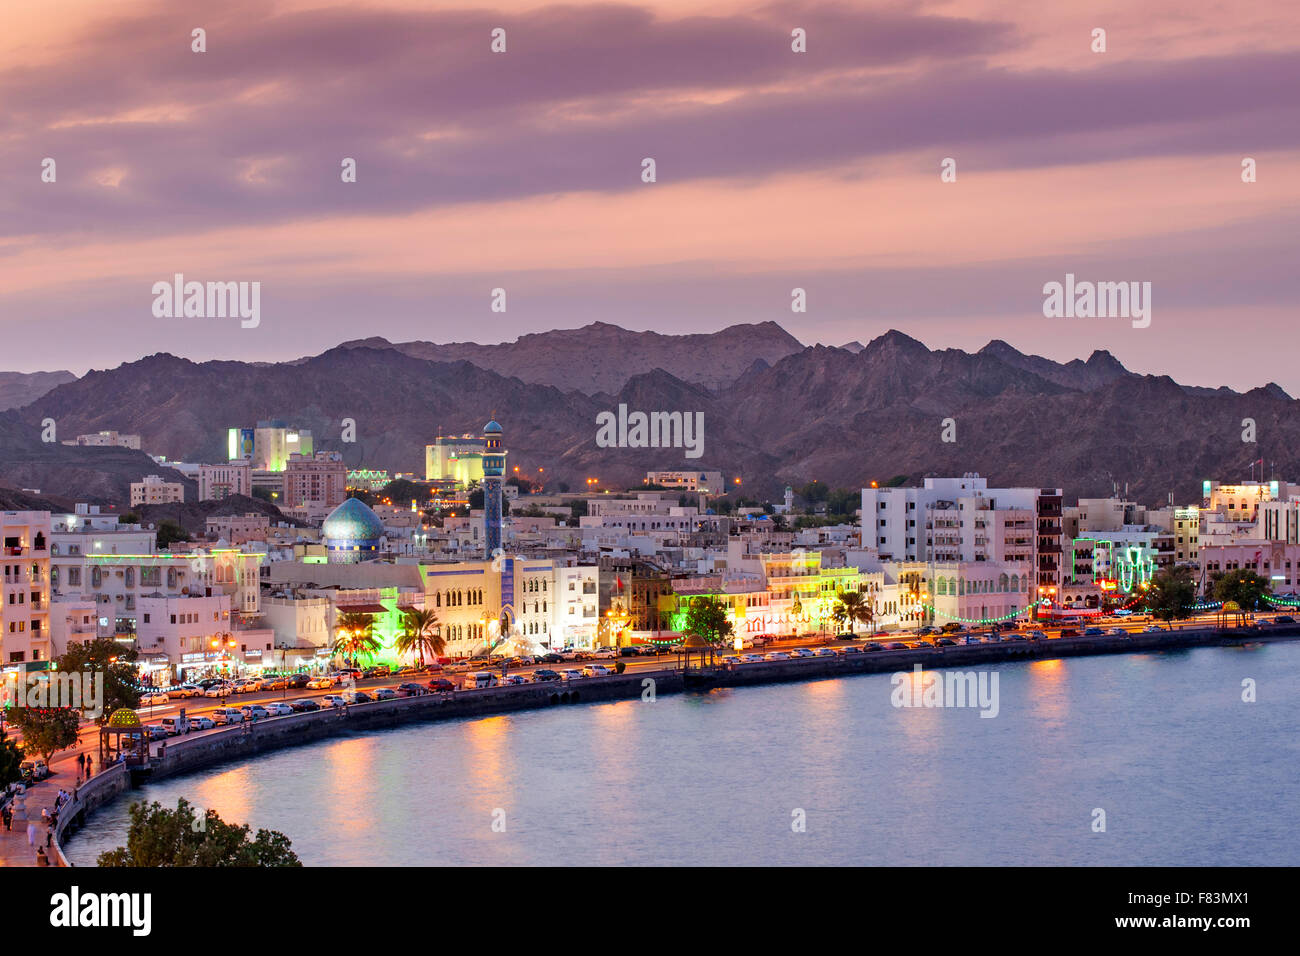 Blick auf die Corniche Mutrah Dämmerung und die umliegenden Berge in Muscat, der Hauptstadt des Sultanats Oman. Stockfoto